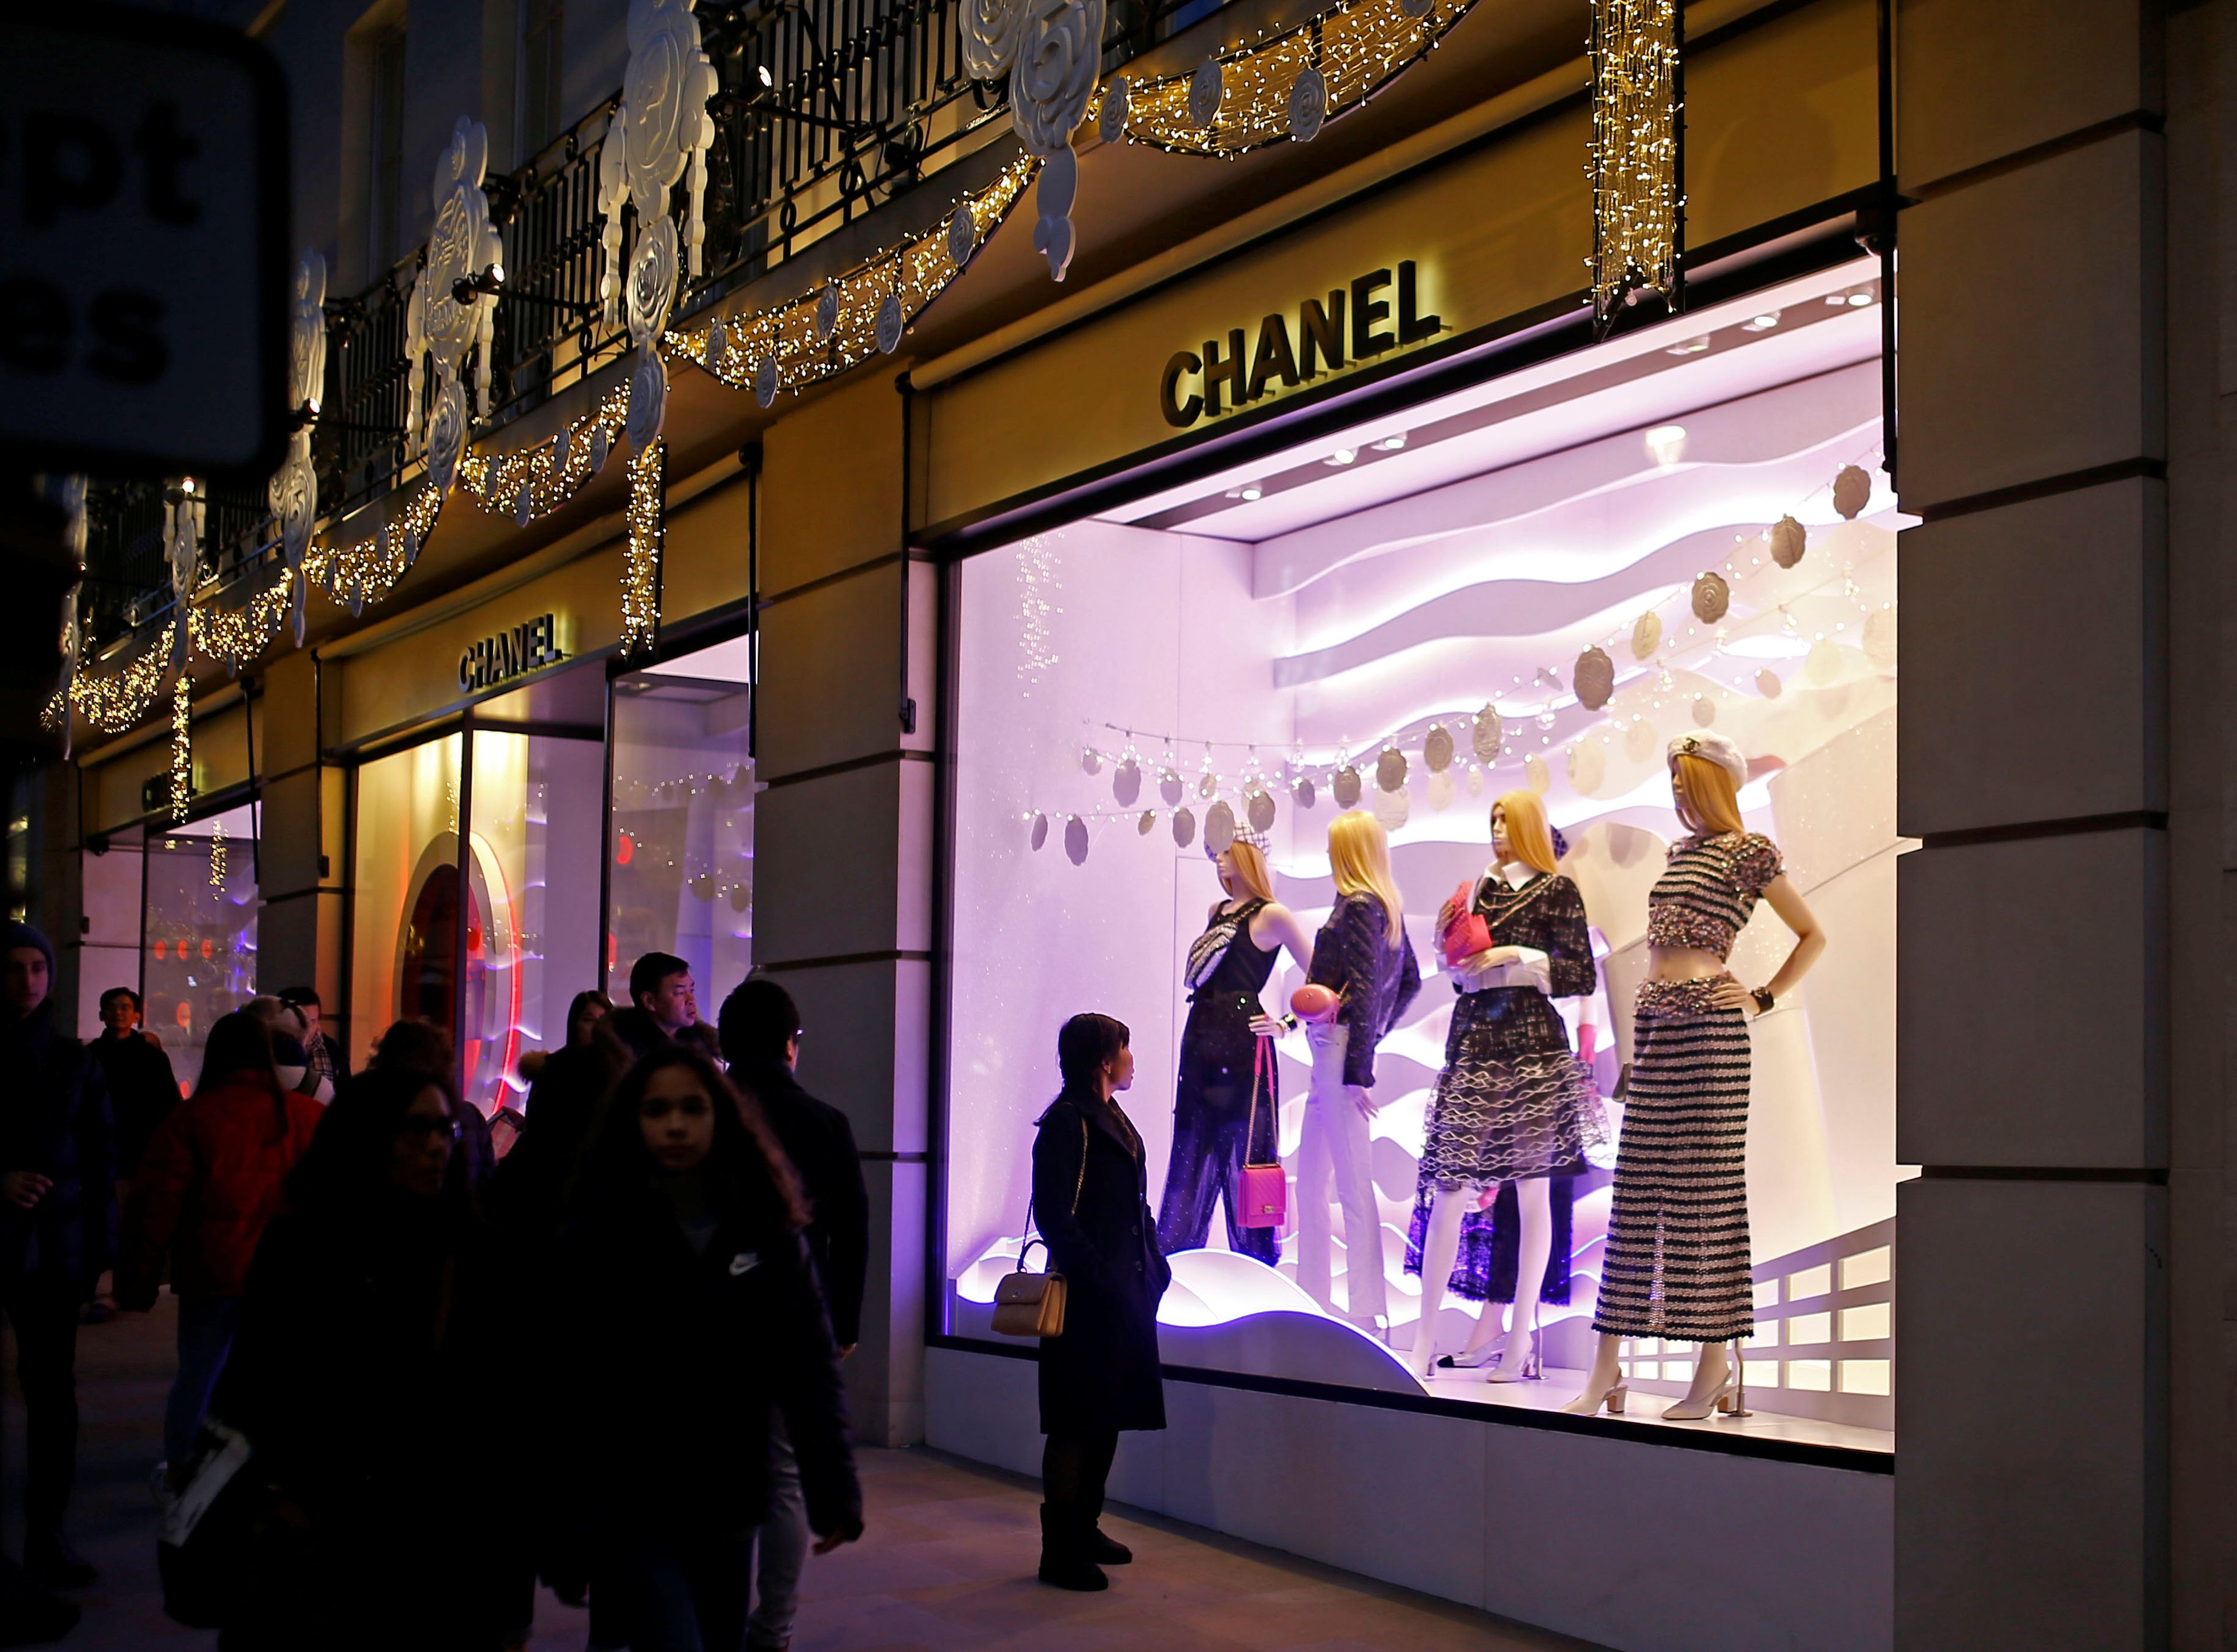 Tienda Chanel